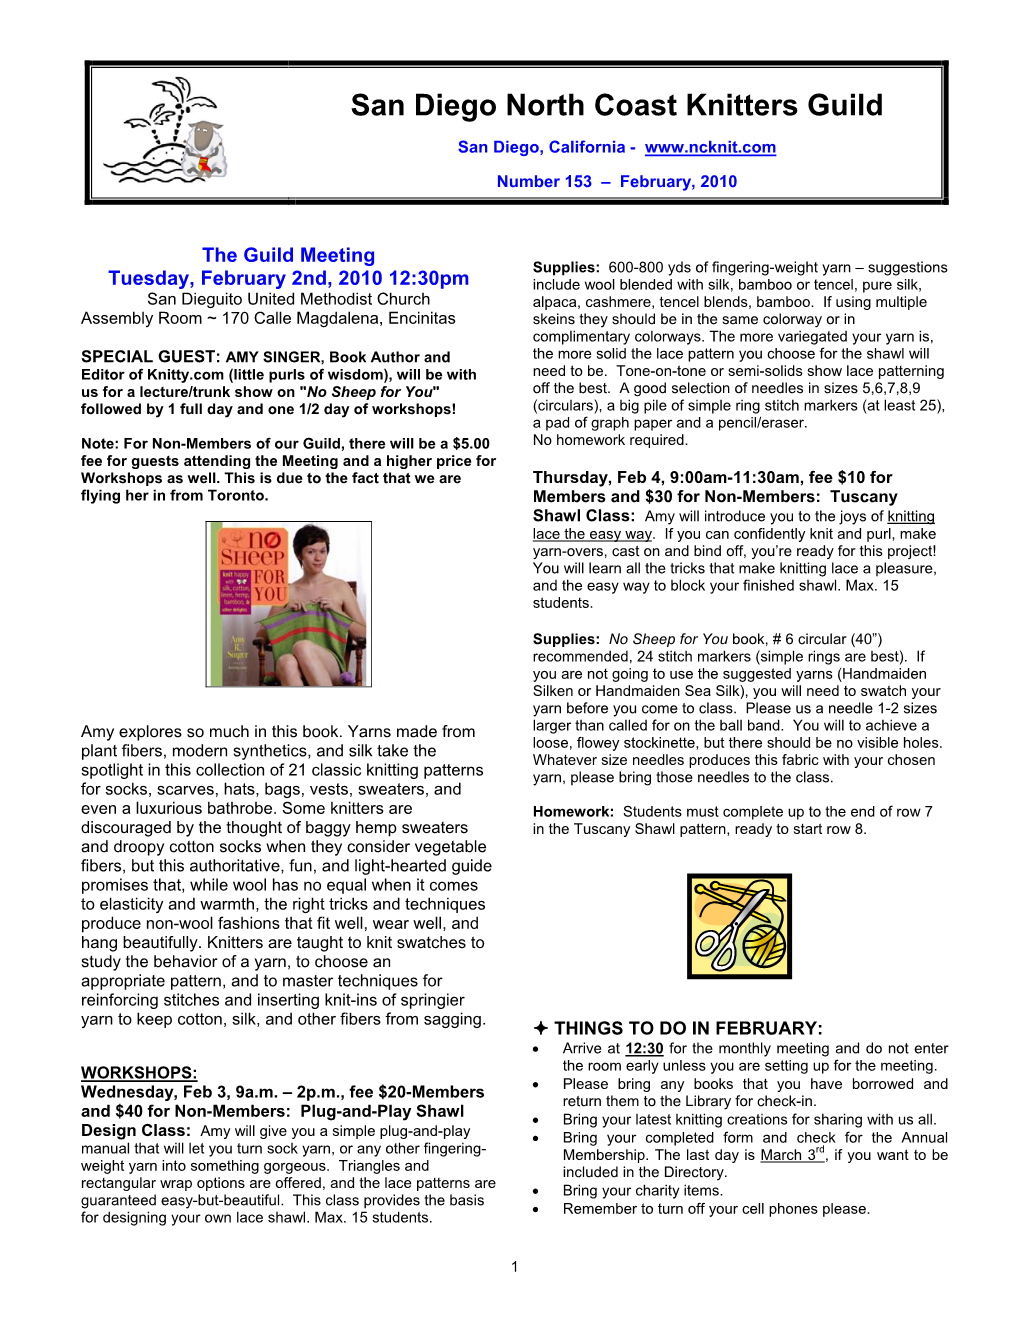 2010 2 February SDNCKG Newsletter